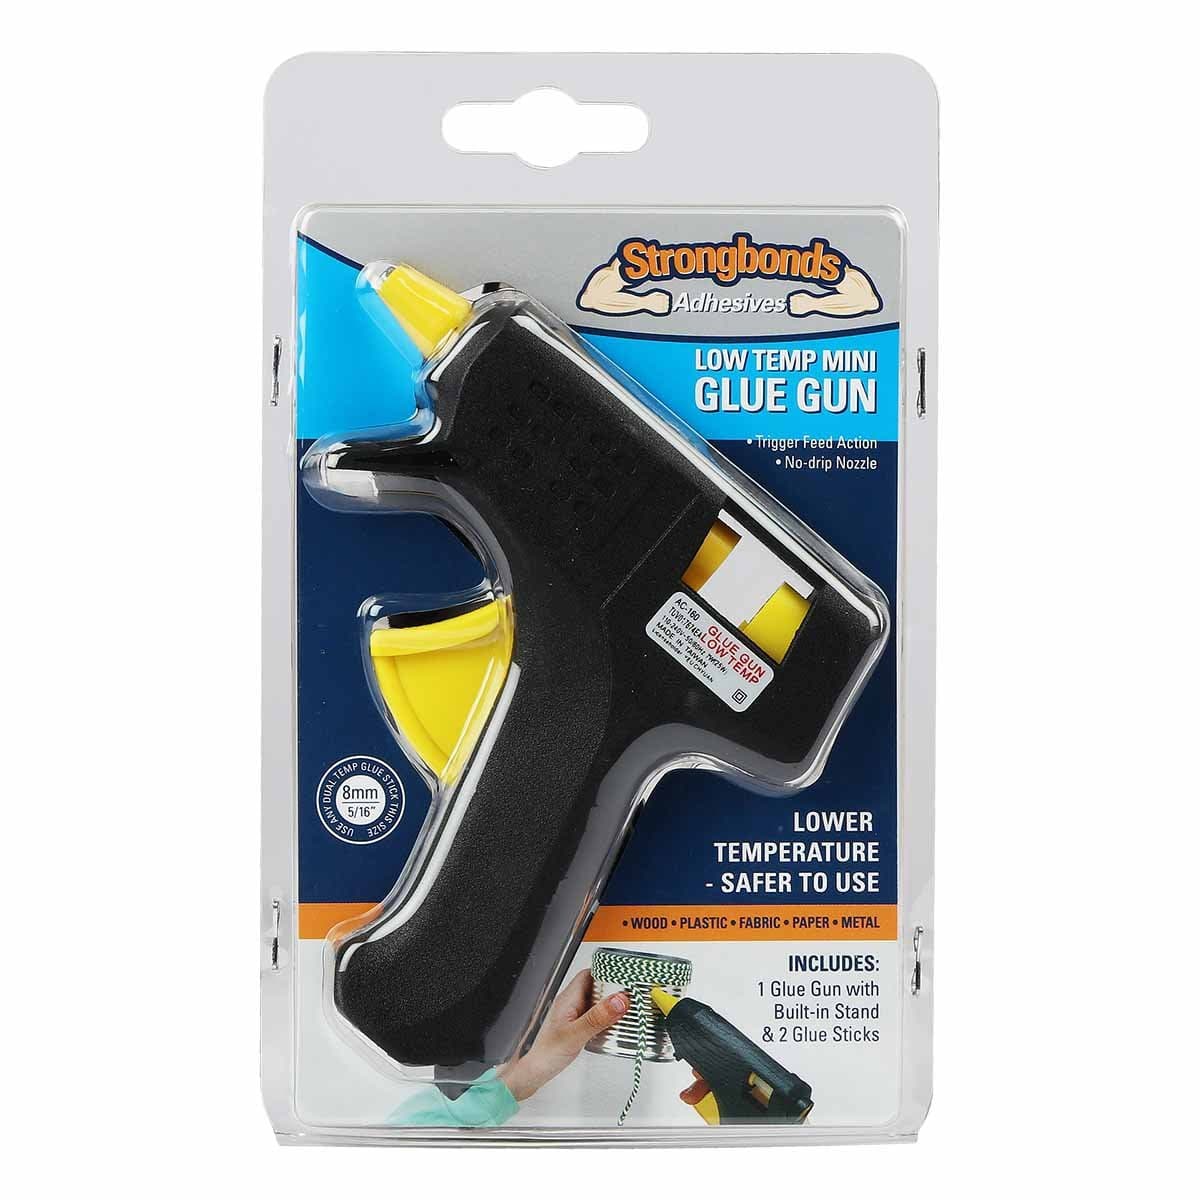 Glue Gun,low Temp